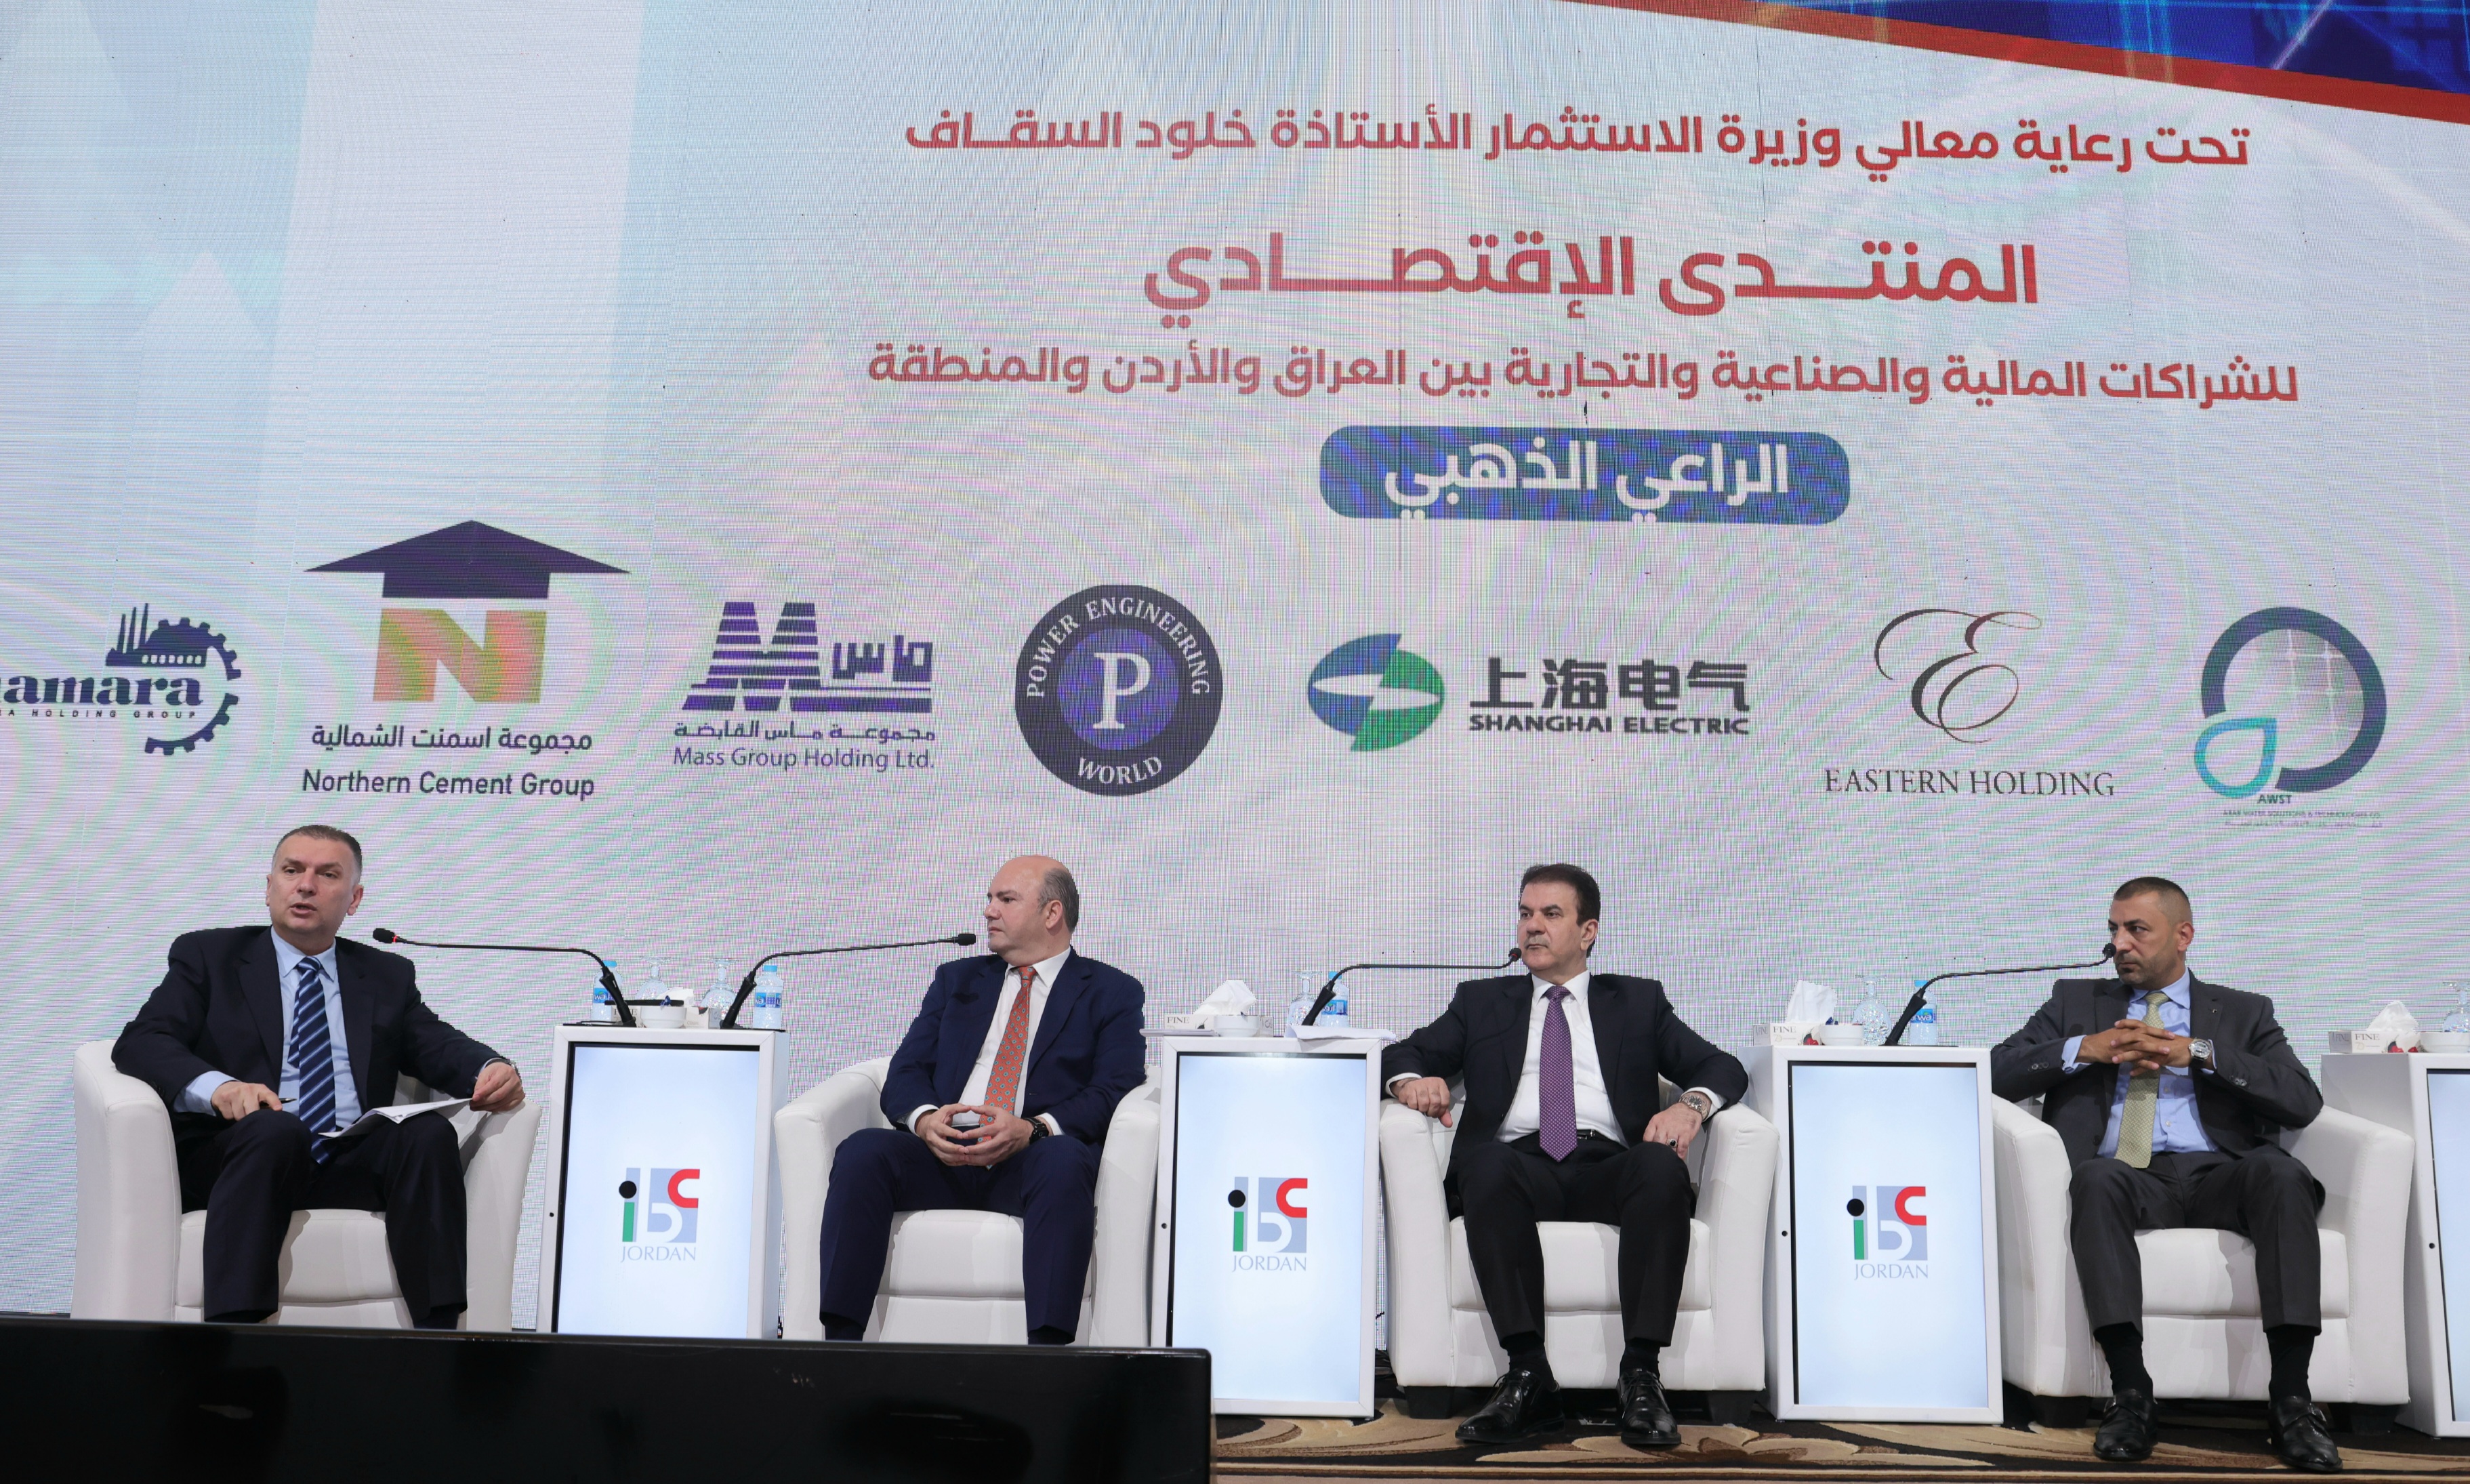 دعوات لتحسين مؤشرات مناخ الاستثمار في الدول العربية 